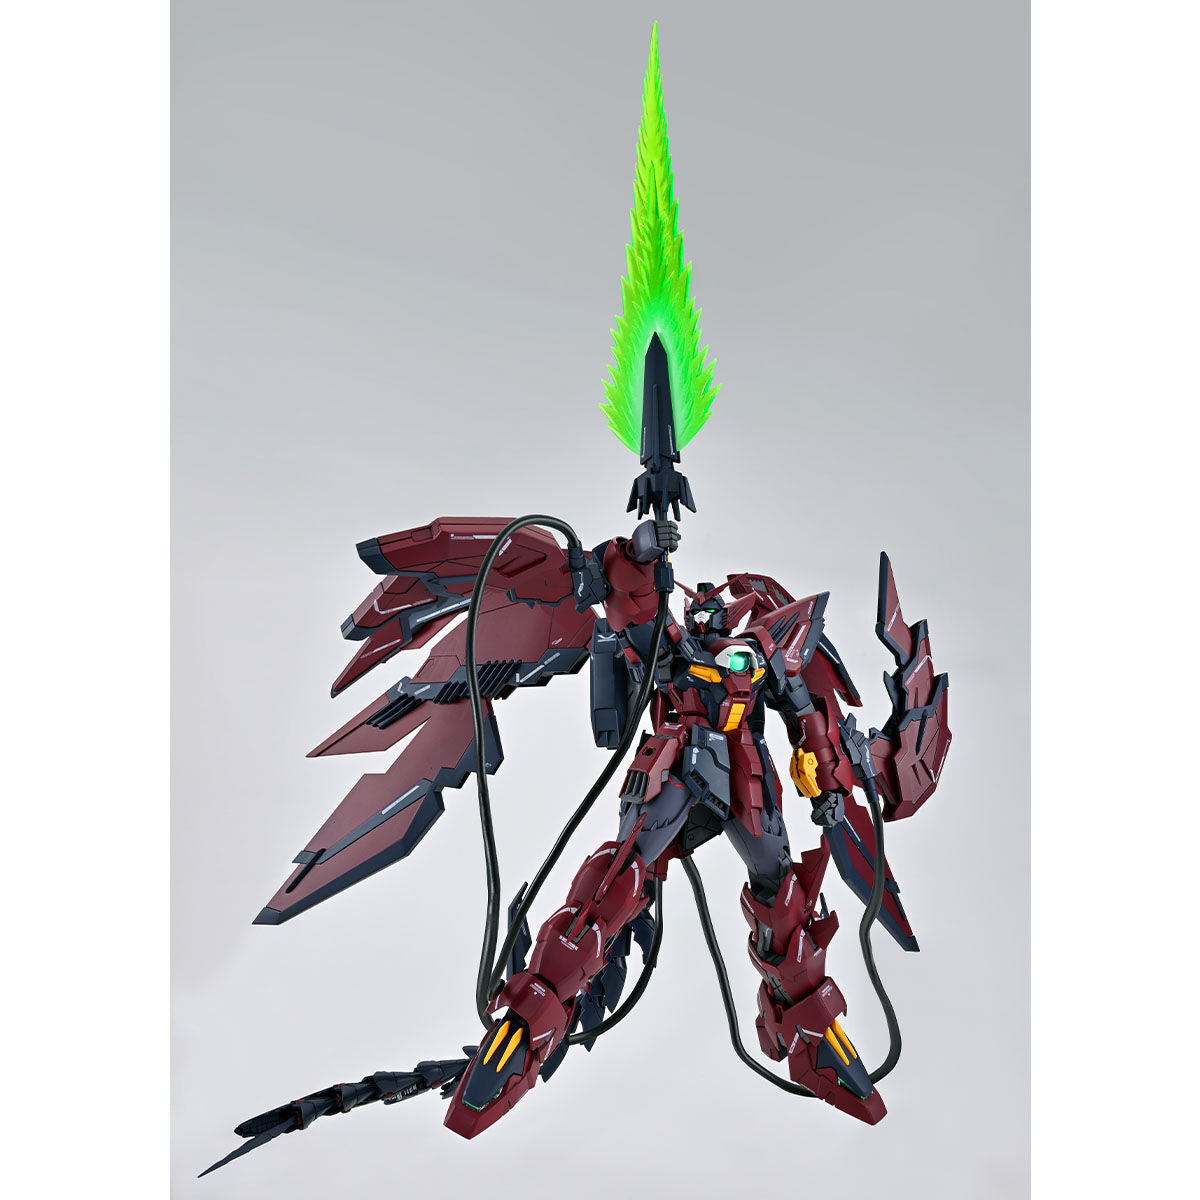 MG 1/100 Gundam Epyon EW (Sturm und Drang Ausrüstung) *VORBESTELLUNG*